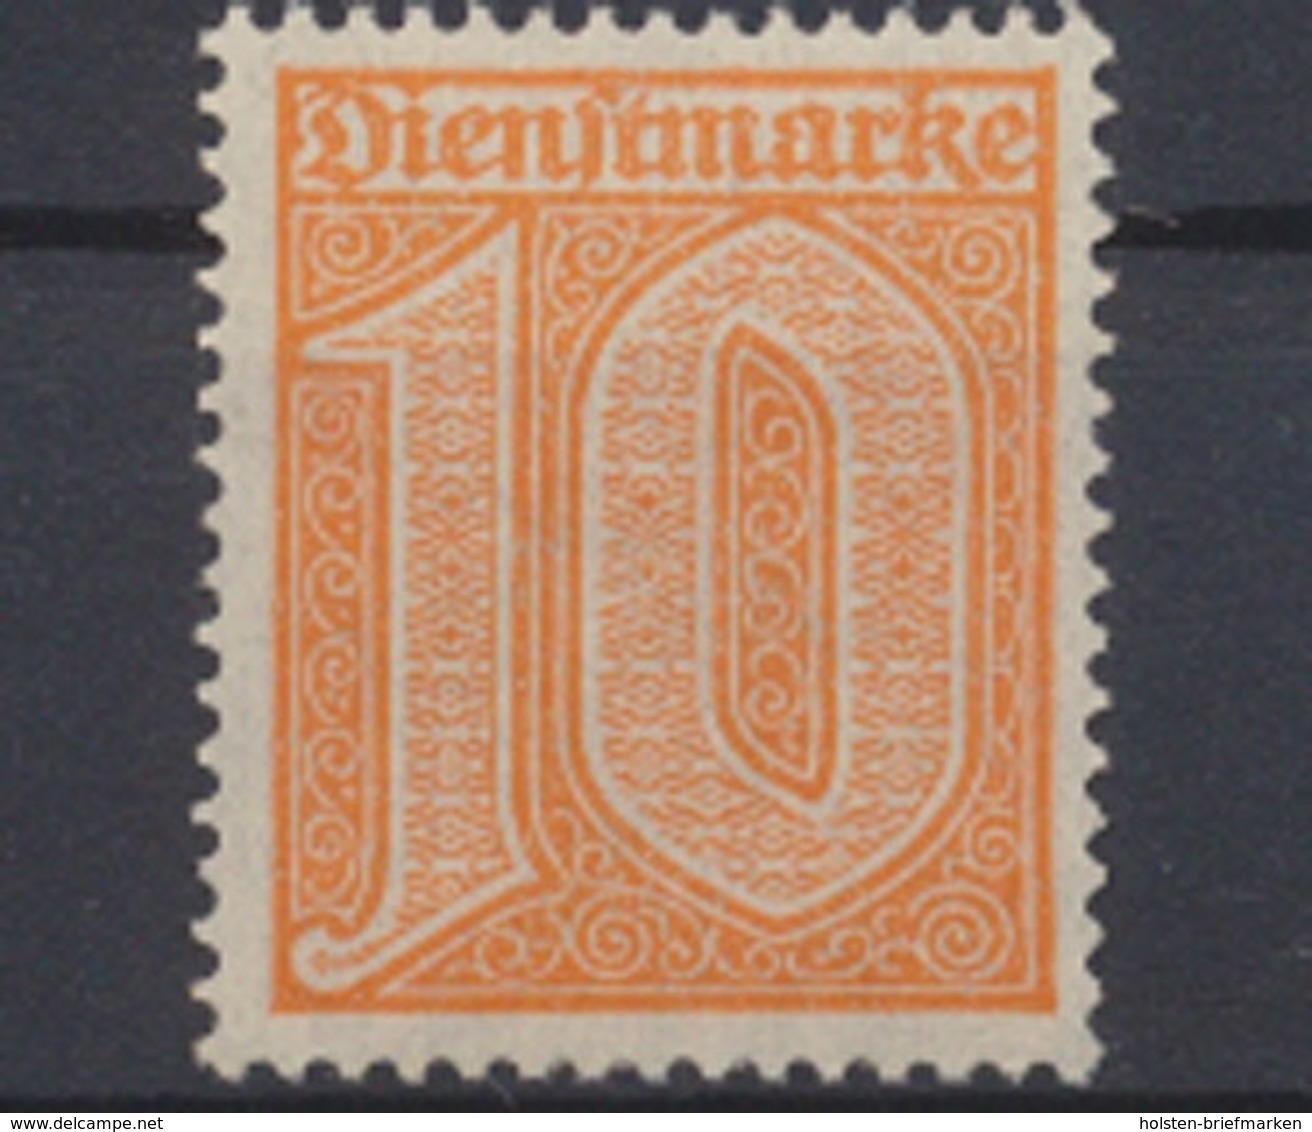 Deutsches Reich, MiNr. 65, Dienstmarken, Postfrisch / MNH - Dienstmarken